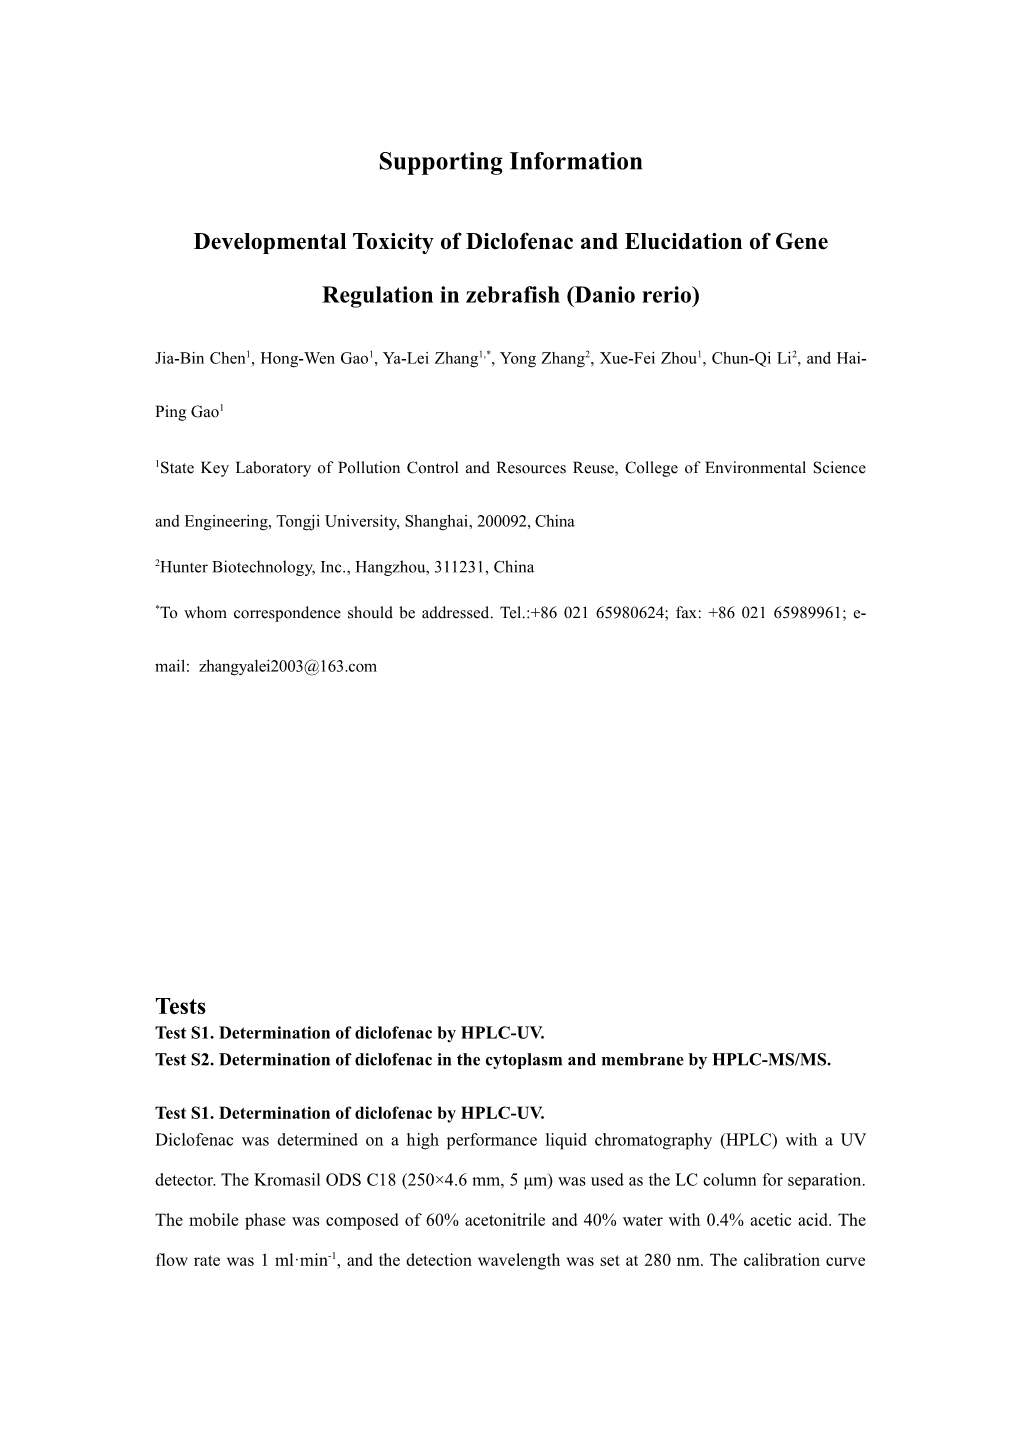 Developmental Toxicity of Diclofenac and Elucidation of Gene Regulation in Zebrafish (Danio